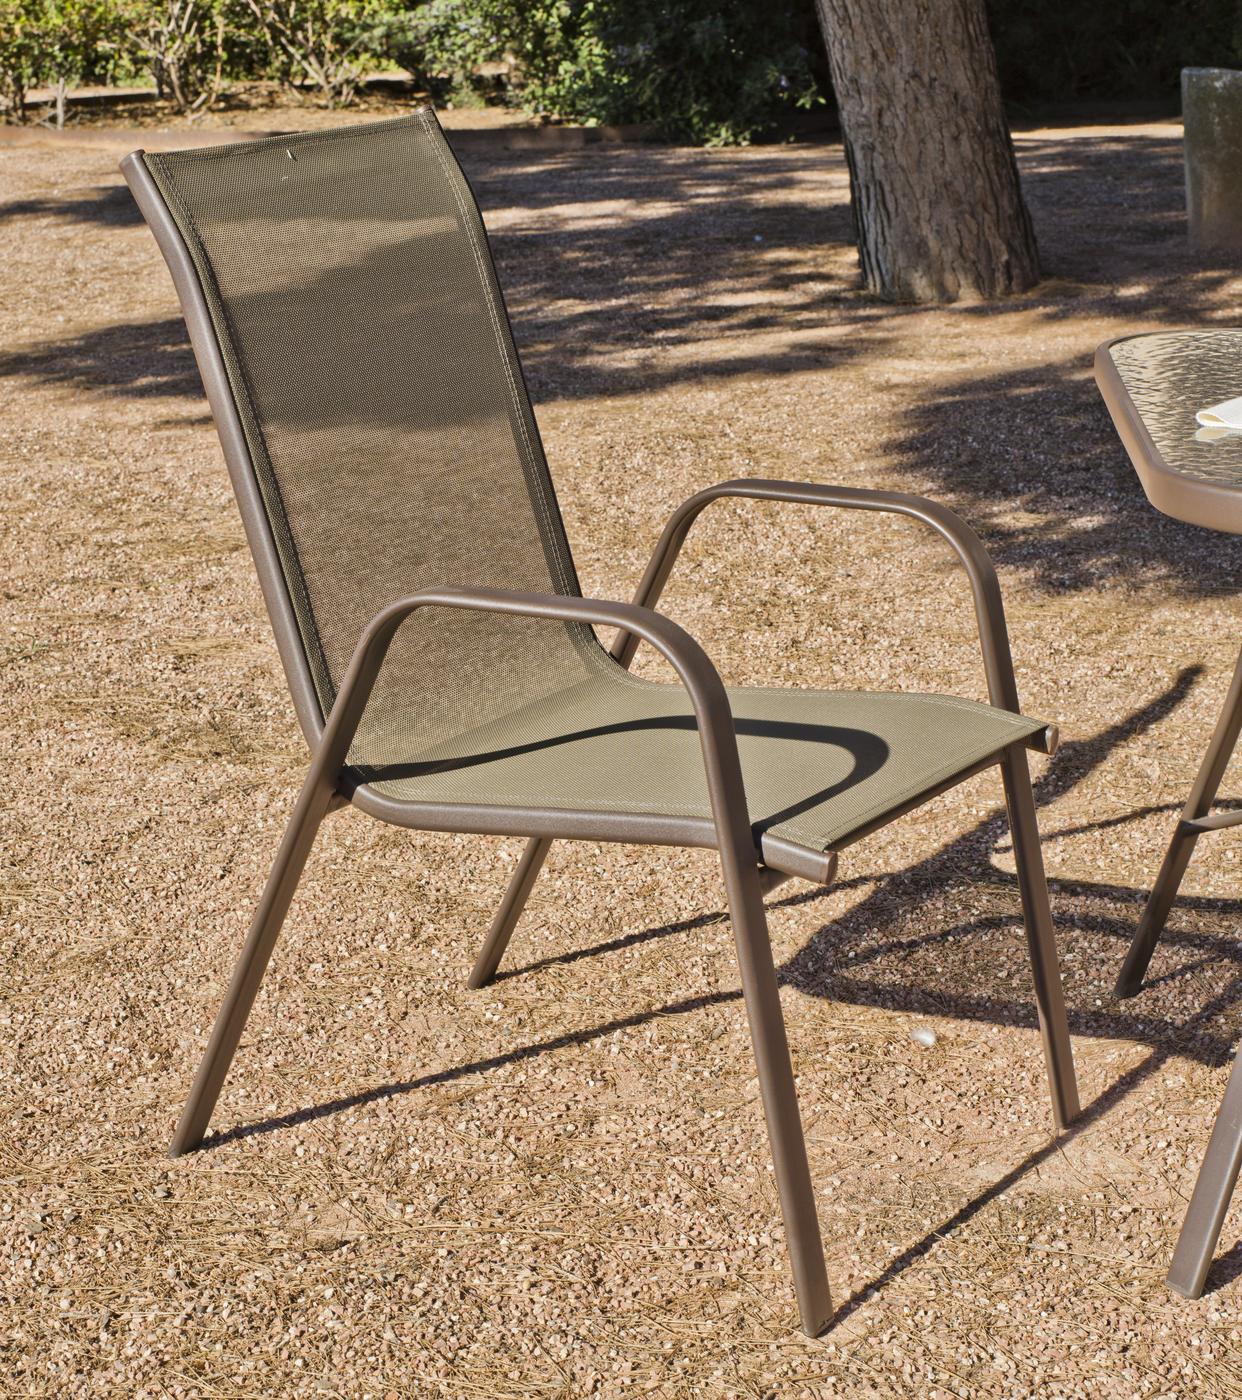 Set Acero Macao-90 - Conjunto de acero color bronce: mesa redonda de 90 cm. Con tapa de cristal templado + 4 sillones apilables de acero y textilen